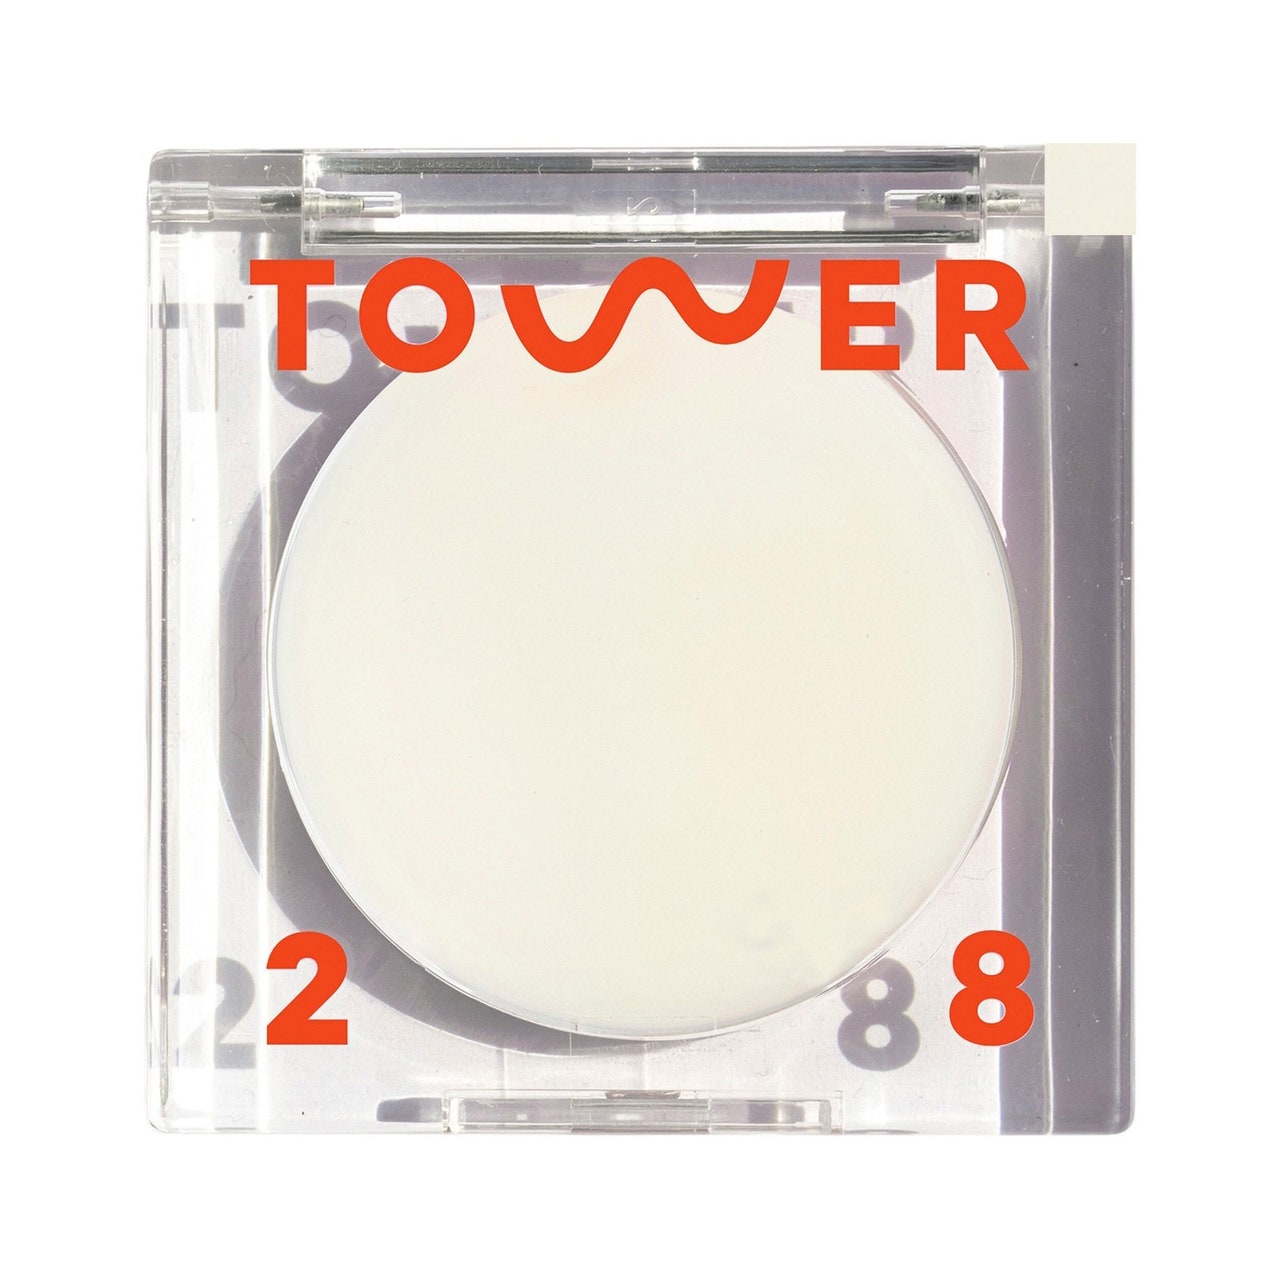 Tower 28 SuperDew Highlighter Balm, klare, quadratische Kompaktpackung aus durchscheinendem Highlighter-Balsam auf weißem Hintergrund